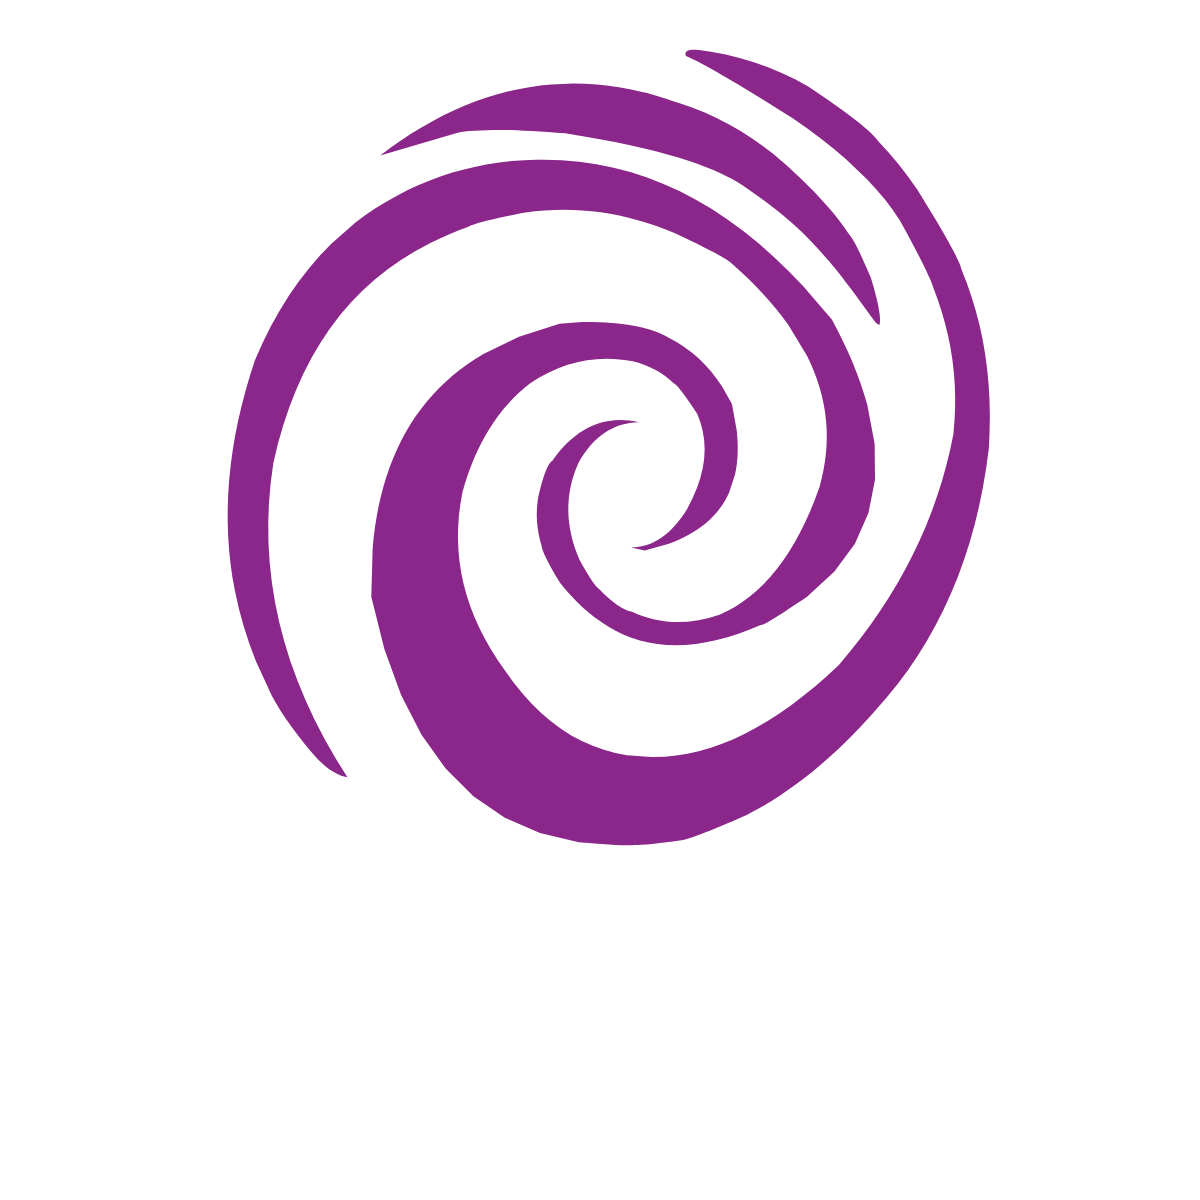 tracy ward